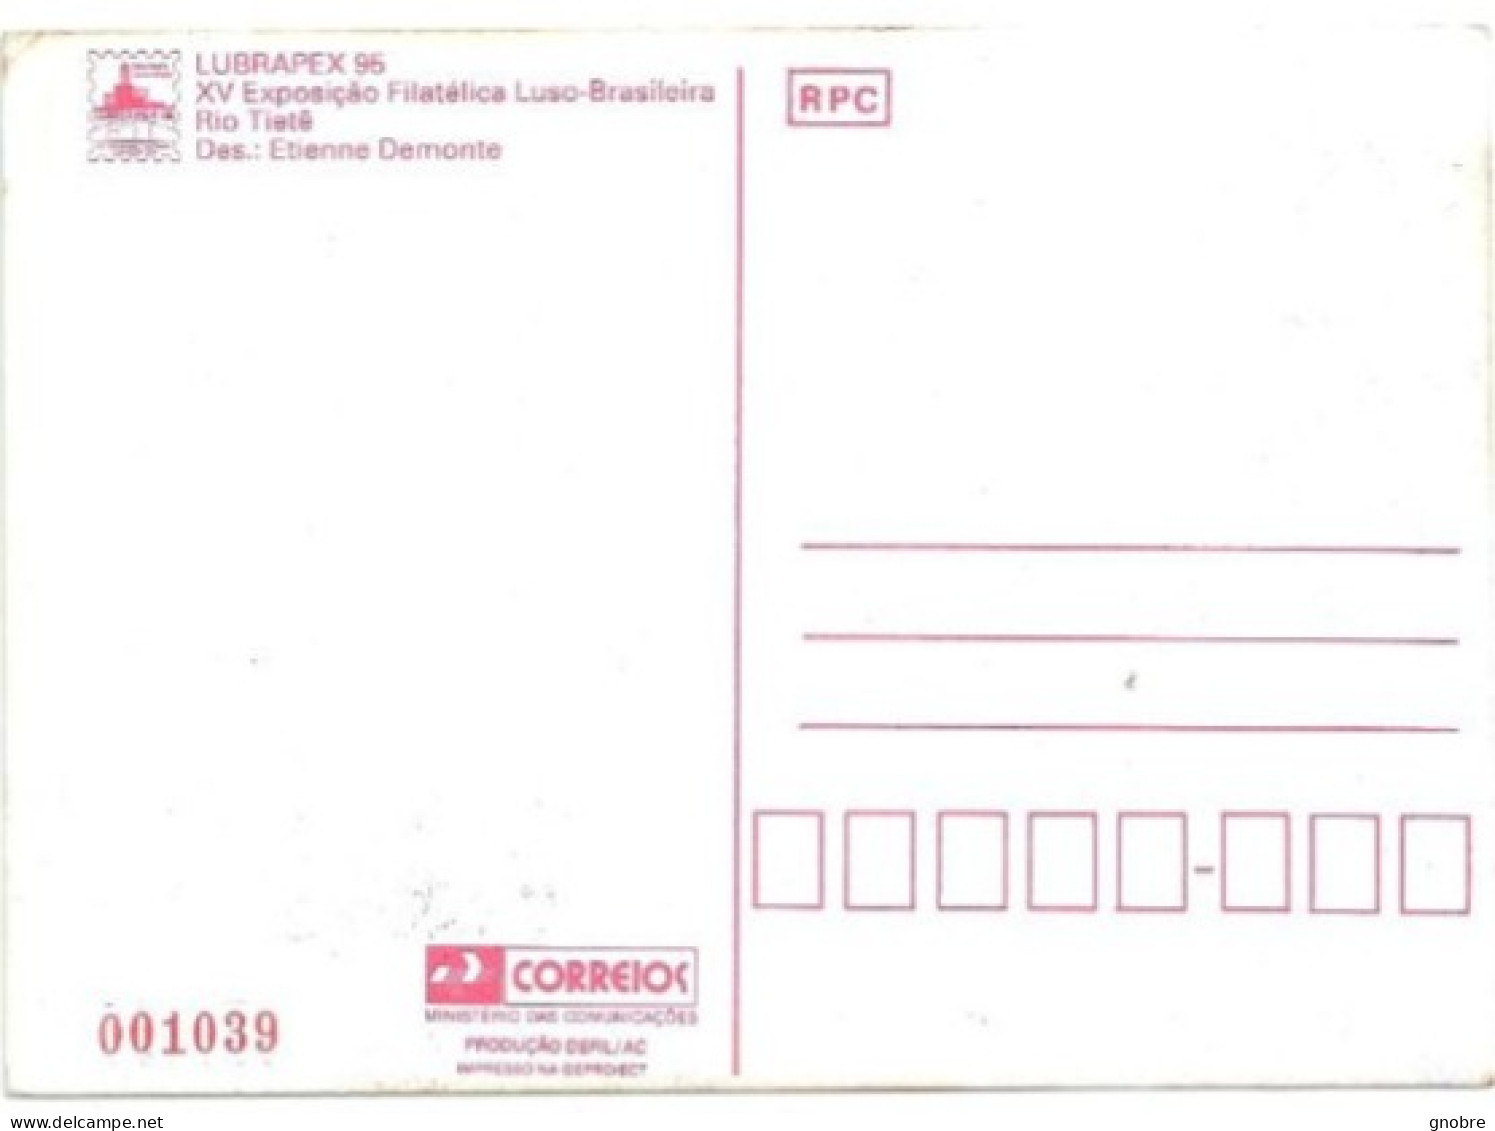 BRAZIL 1995 OFFICIAL MAXIMUM CARD MAX-203 LUBRAPEX 95 PORTUGAL RIO TIETE RIVER - Tarjetas – Máxima